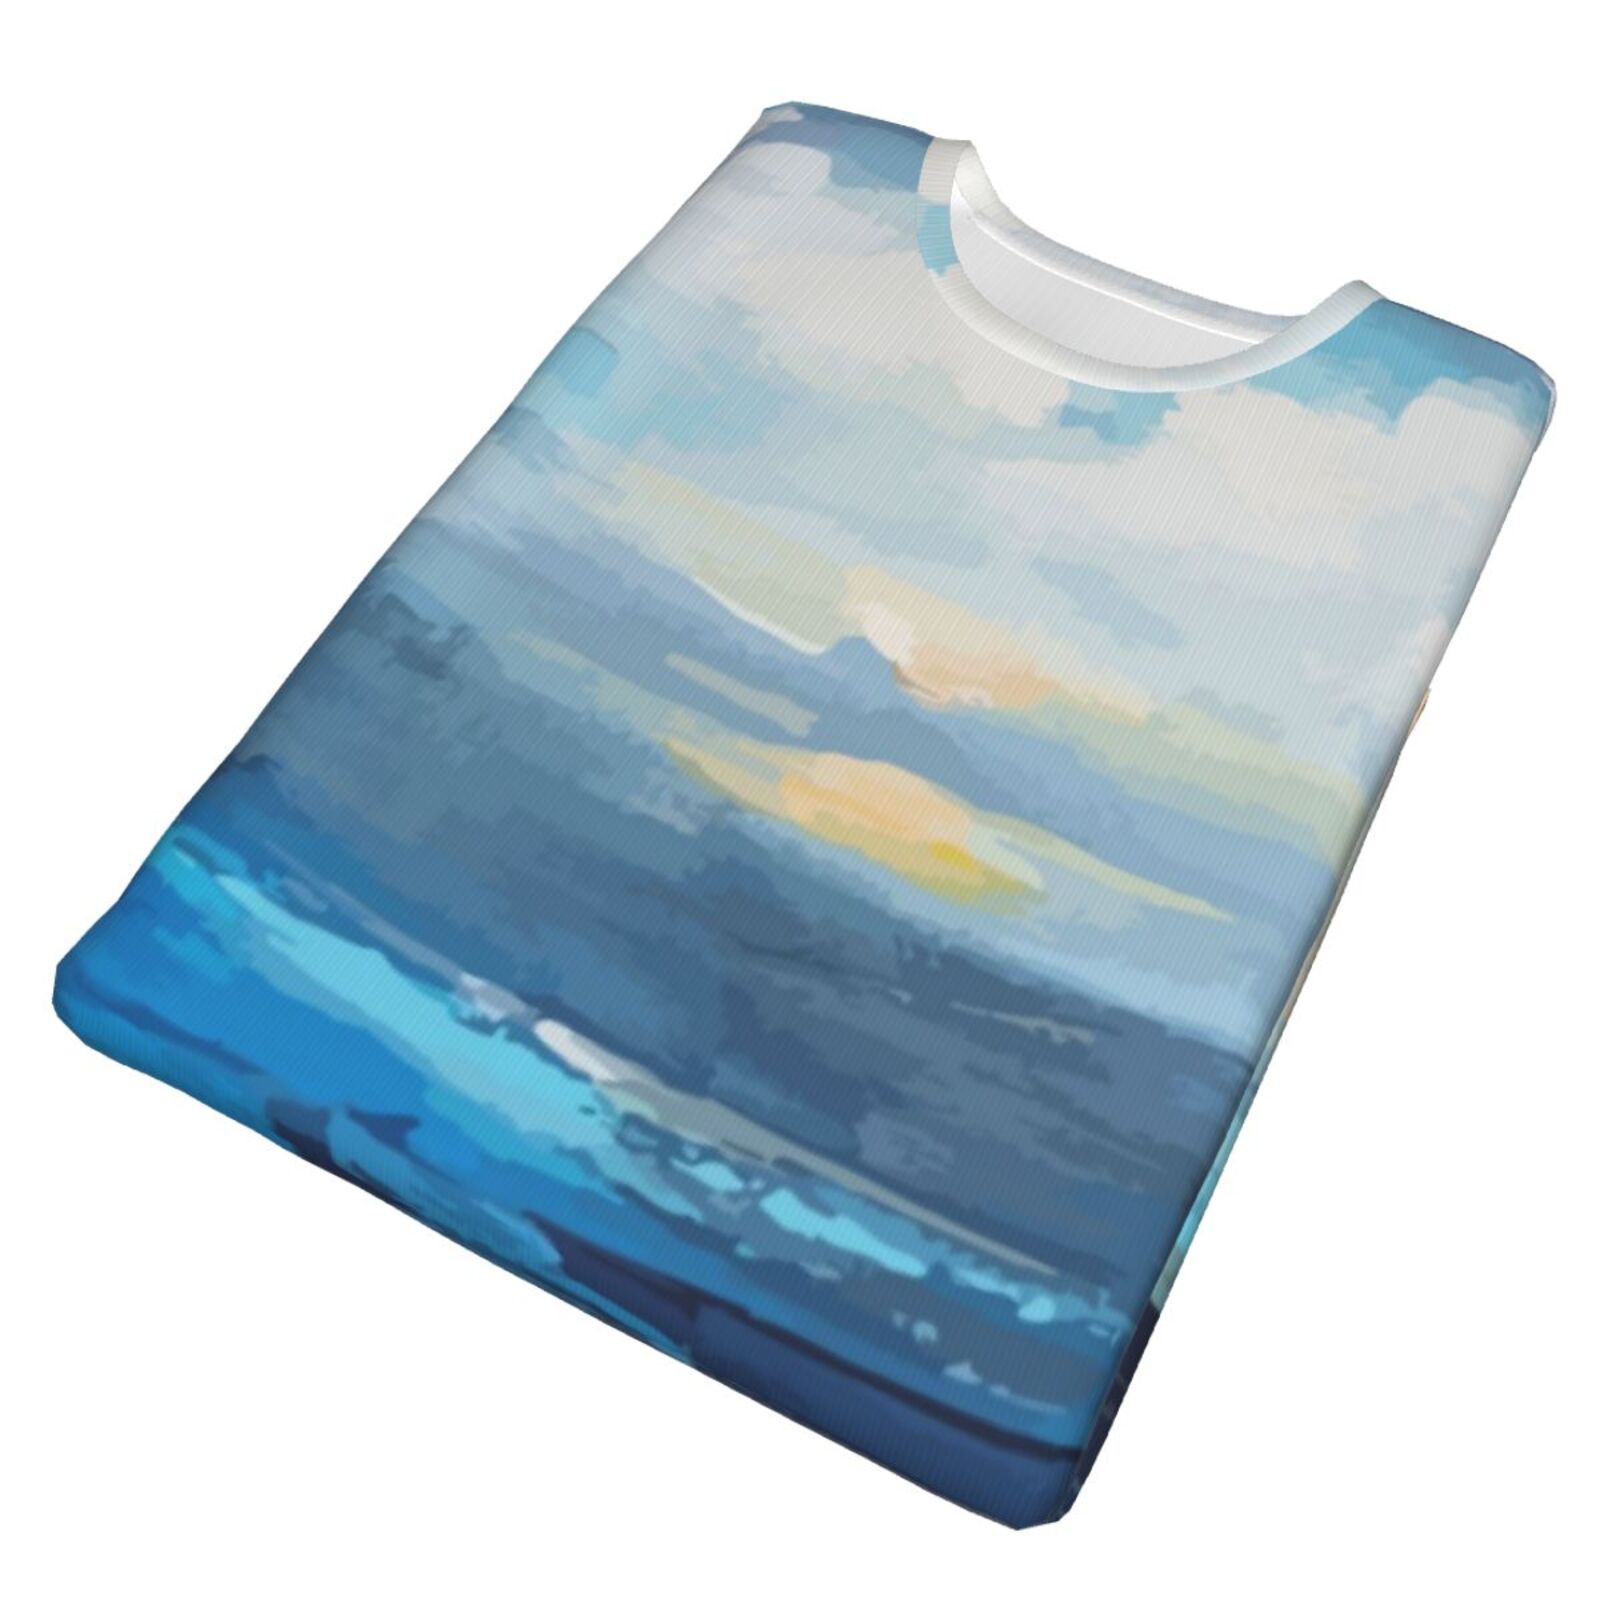 Small Bay Malerelementer Klassisk T-shirt